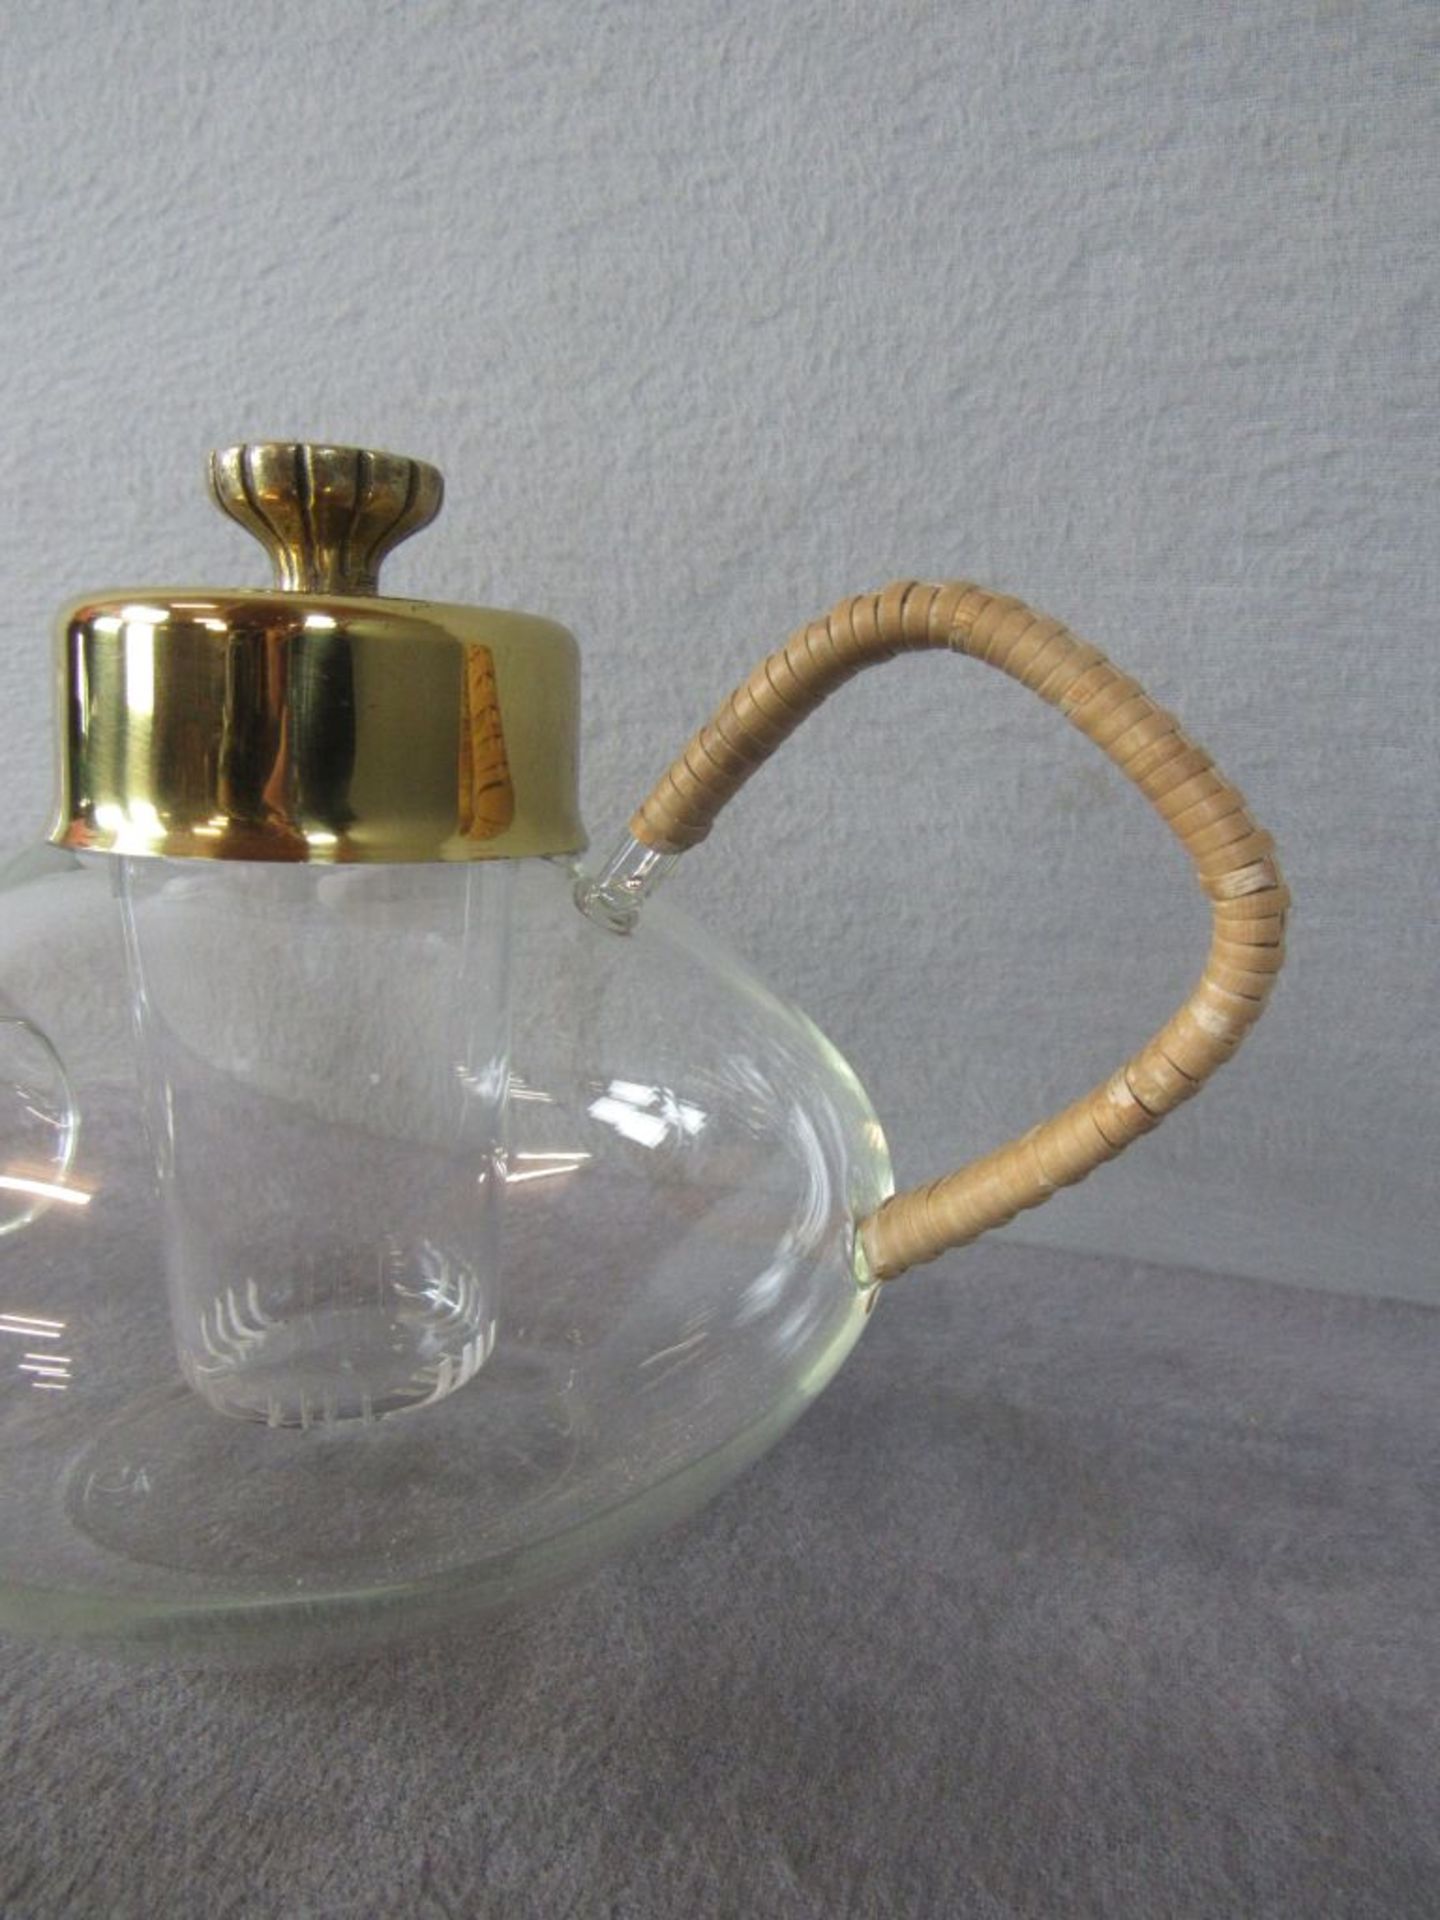 Jenaer Glas Teekanne mit Einsatz wohl Wagenfeld Höhe:14,5cm Breite:27cm Fassungsvermögen: 1 Liter - Image 2 of 8